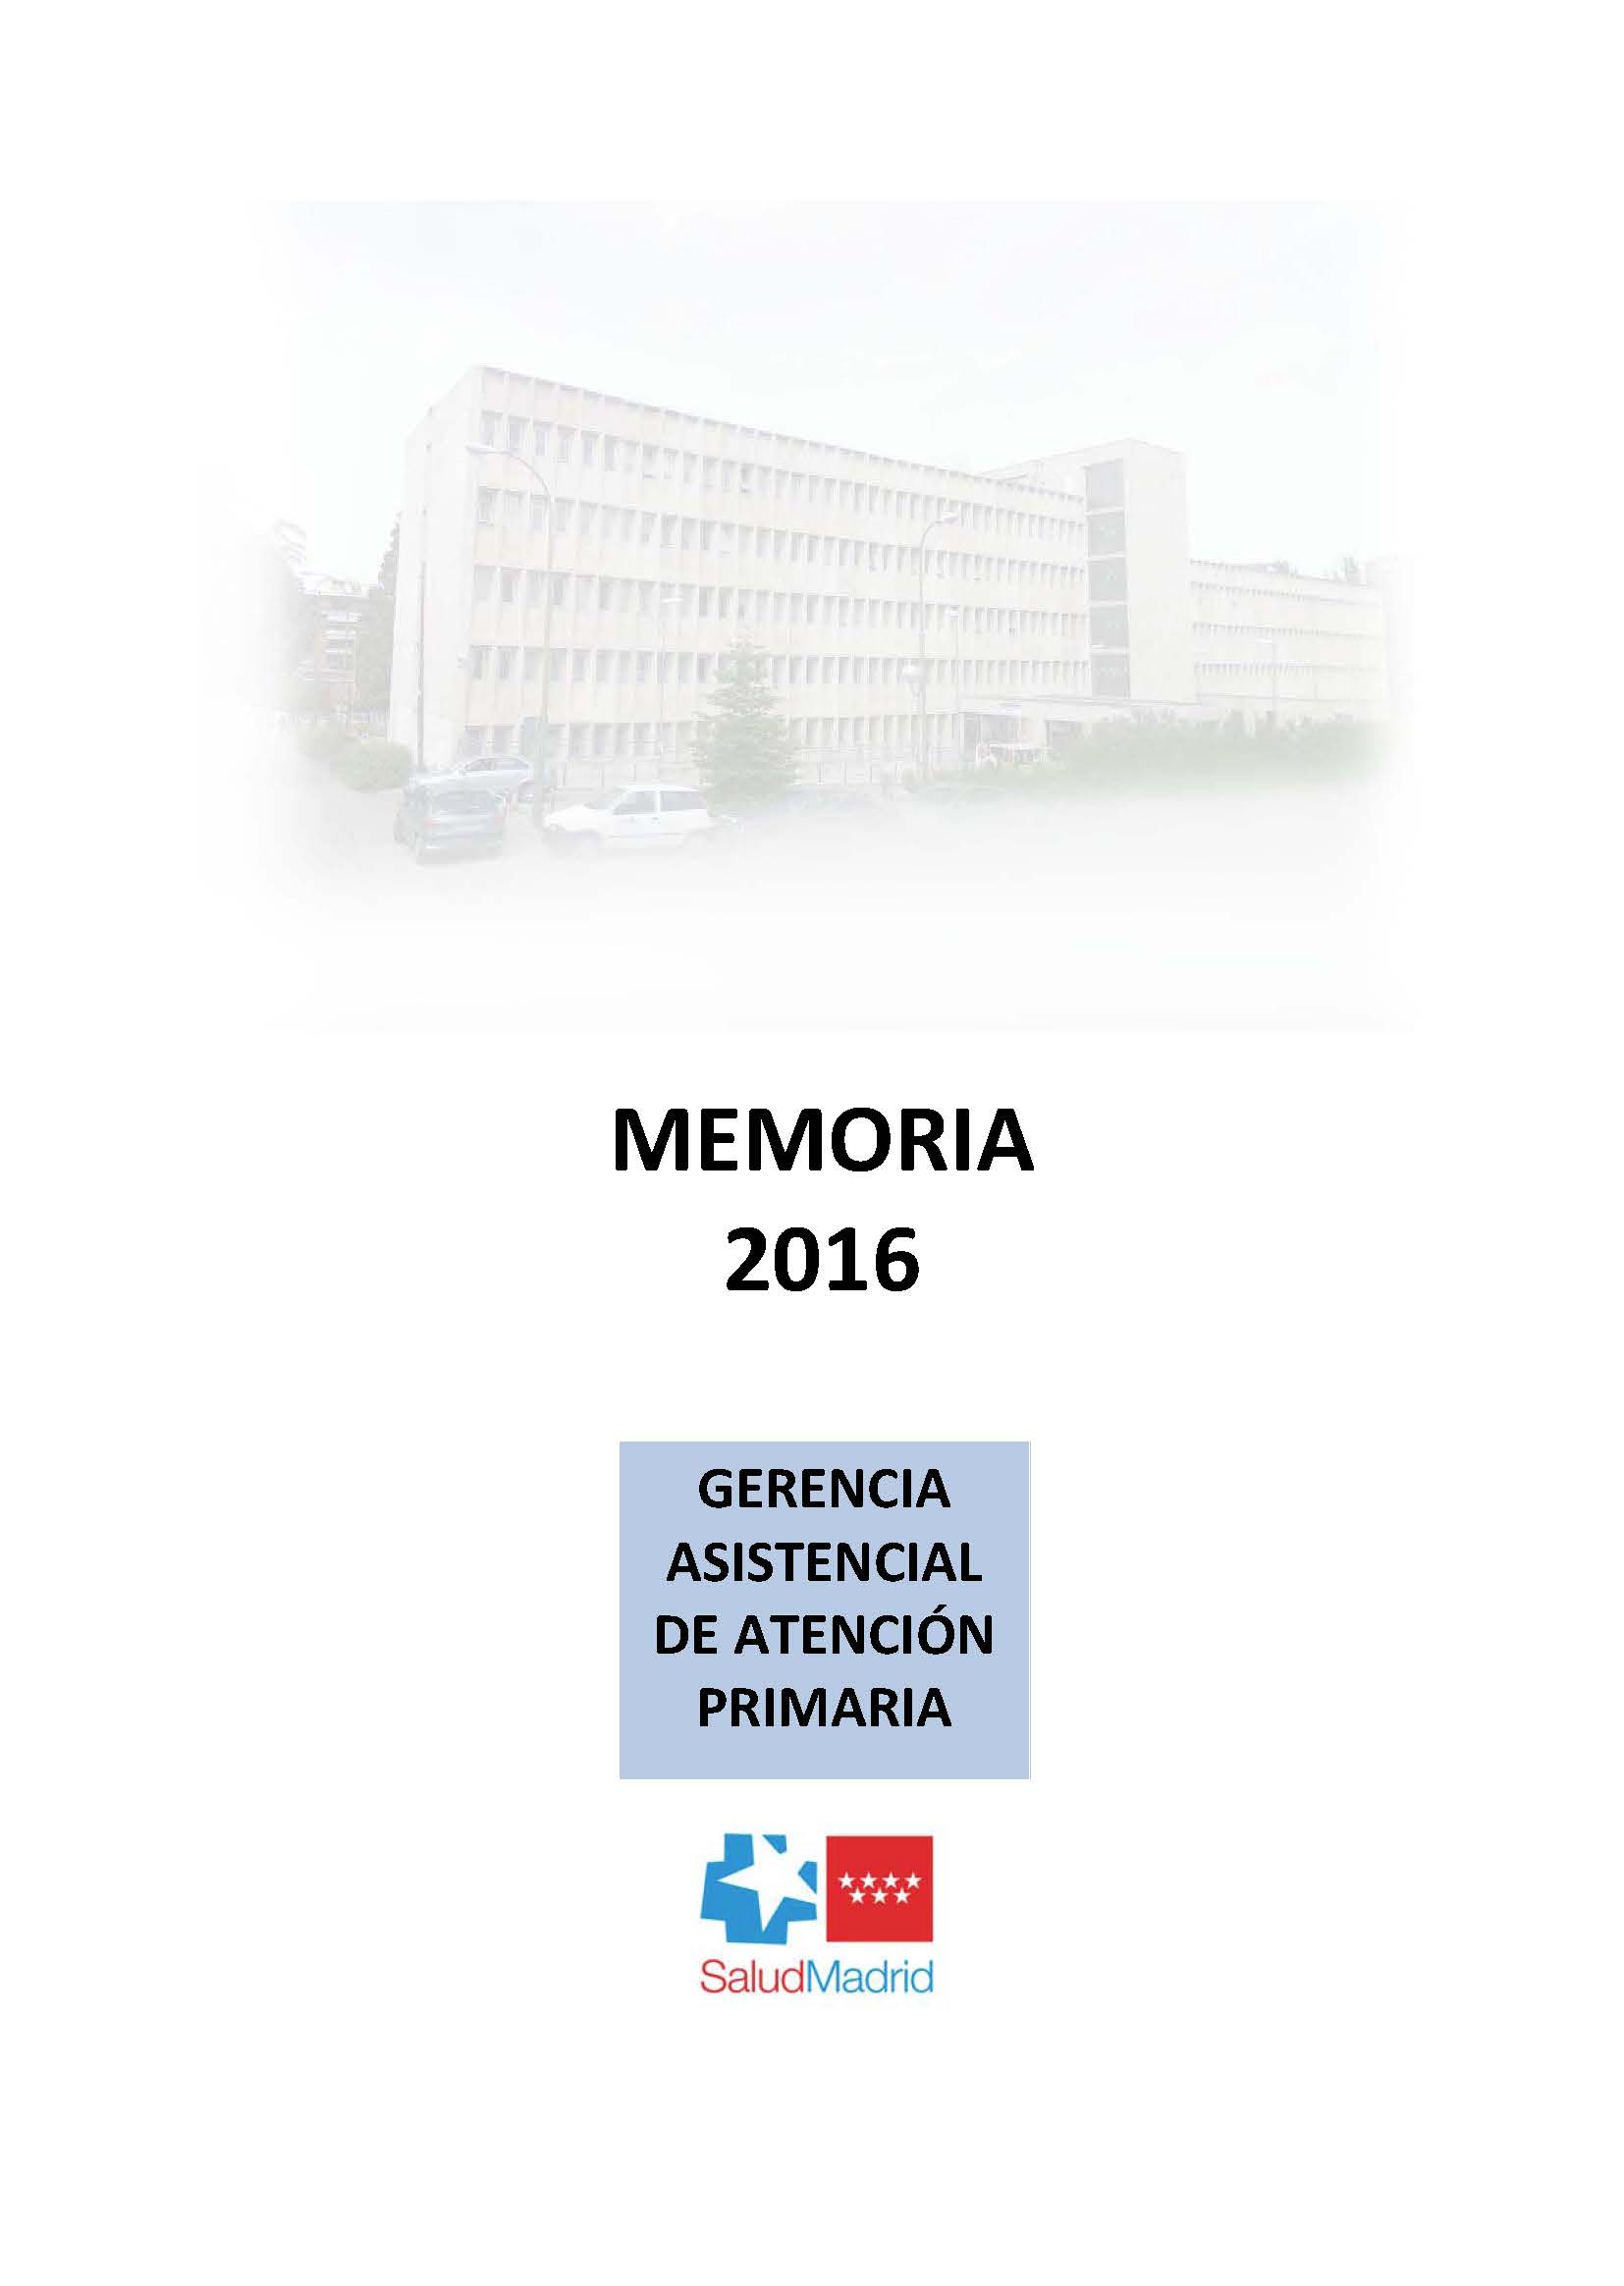 Portada de Memoria Anual 2016 Gerencia Asistencial Atencion Primaria